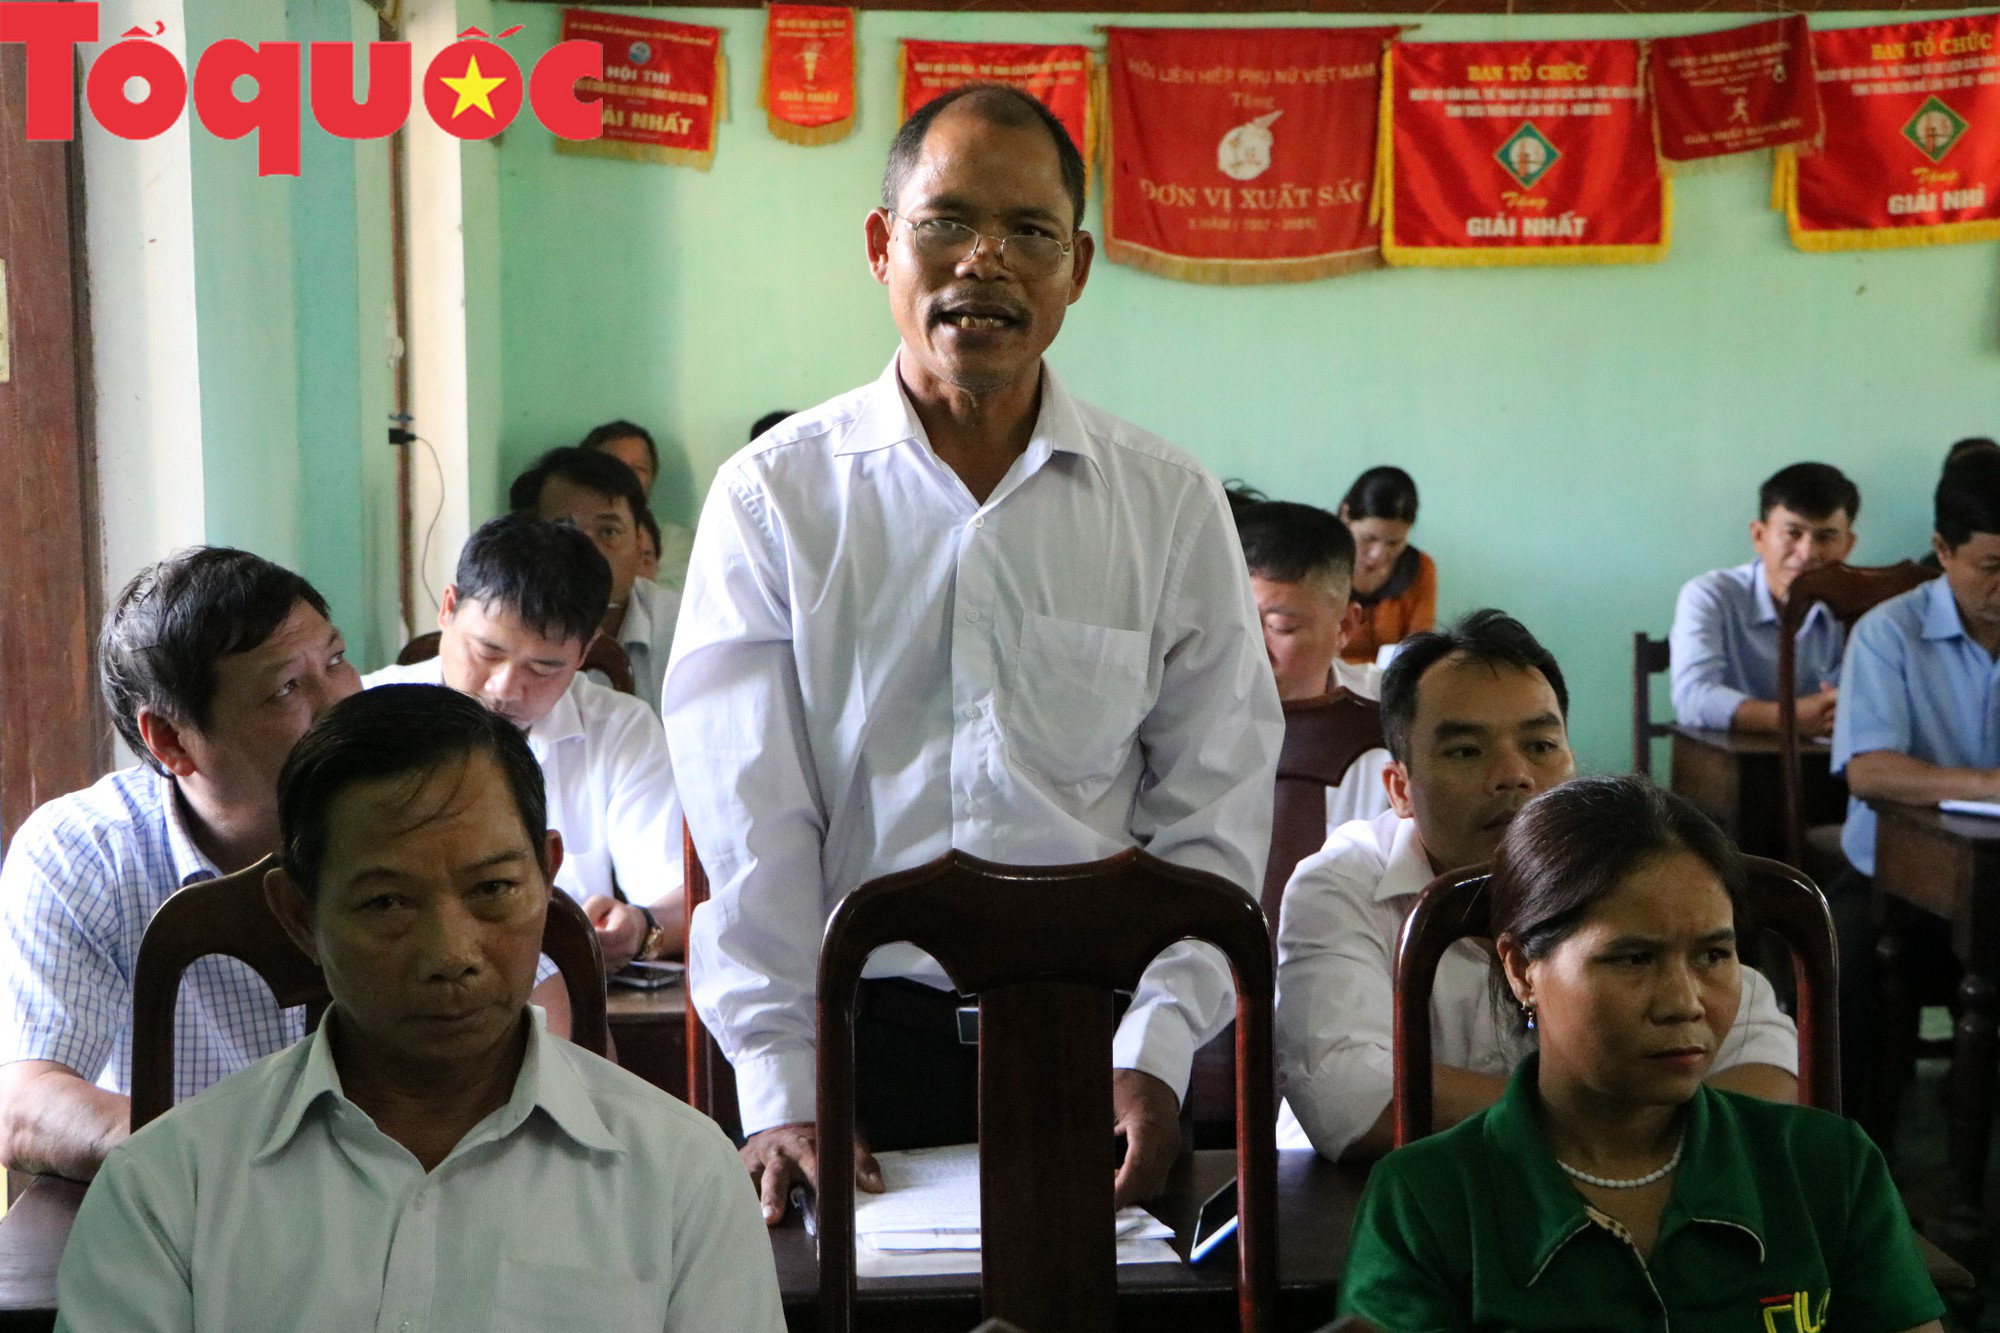 Bộ trưởng Nguyễn Ngọc Thiện: Đảng và Nhà nước rất quan tâm và kiên quyết xử lý các tệ nạn xã hội - Ảnh 2.